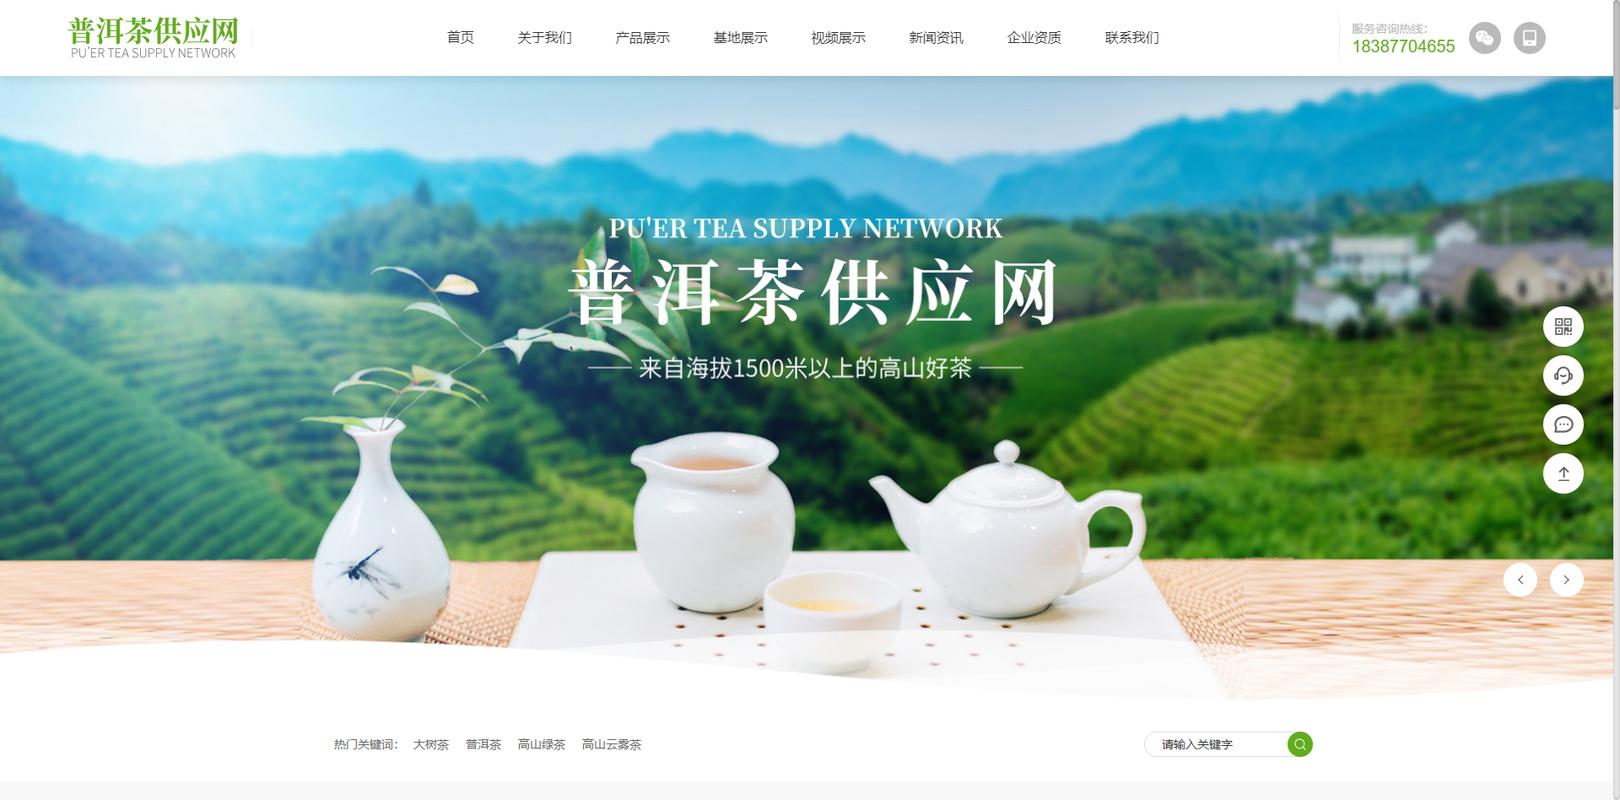 墨江雾兴茶叶加工厂|专注高山生态茶种植销售